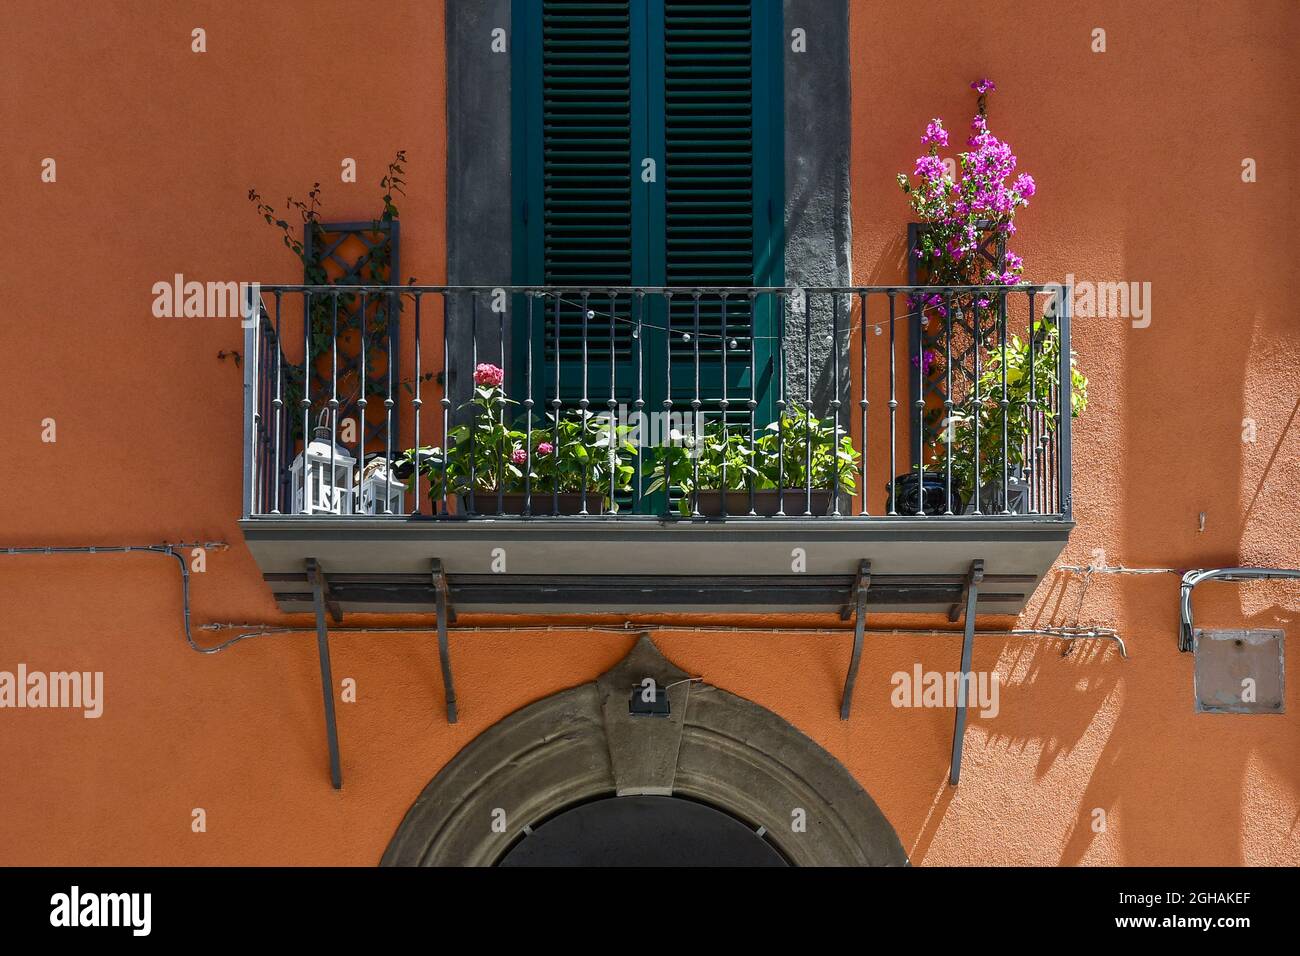 Detalle de la fachada naranja de una casa antigua con plantas floridas en macetas en un pequeño balcón en verano, Livorno, Toscana, Italia Foto de stock